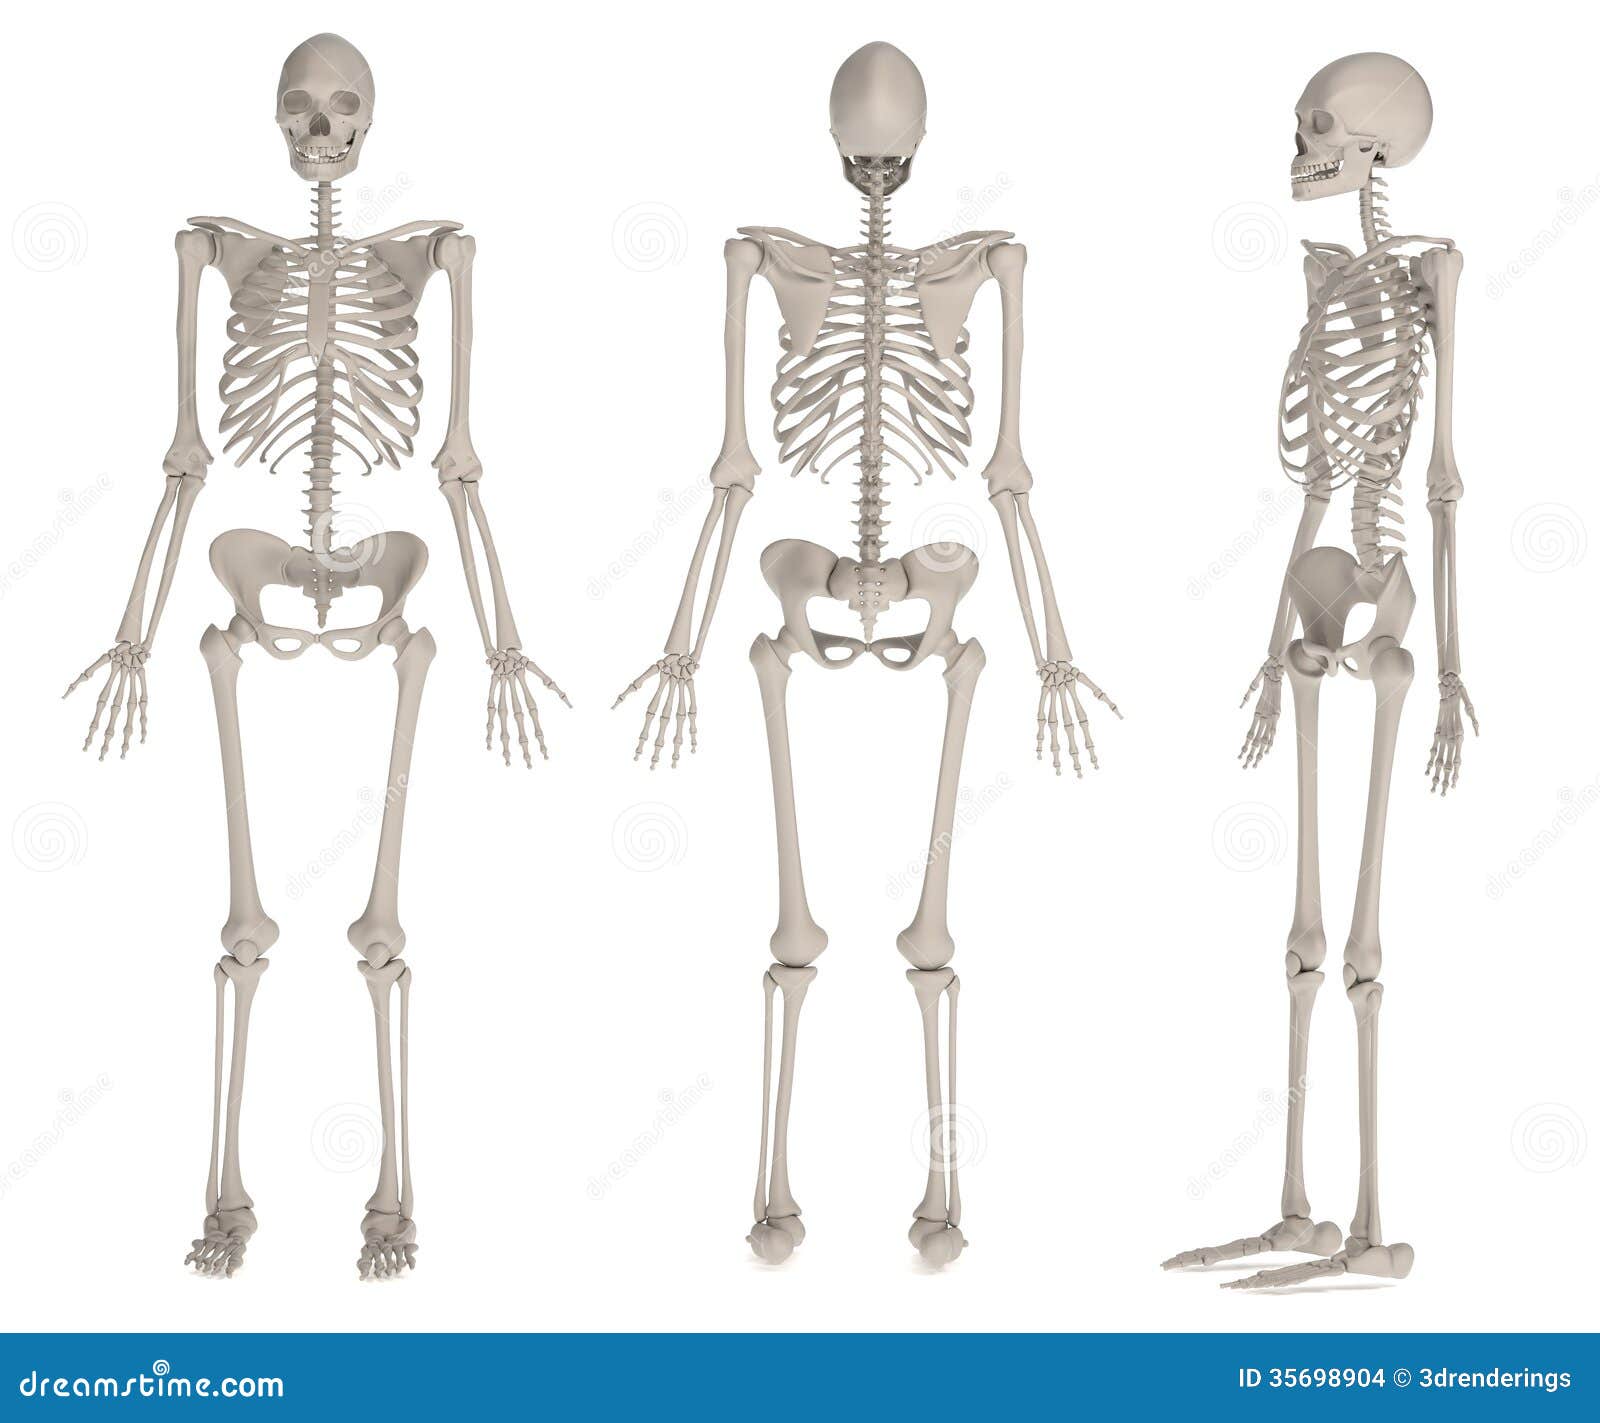 Render of female skeleton stock illustration. Illustration of bones